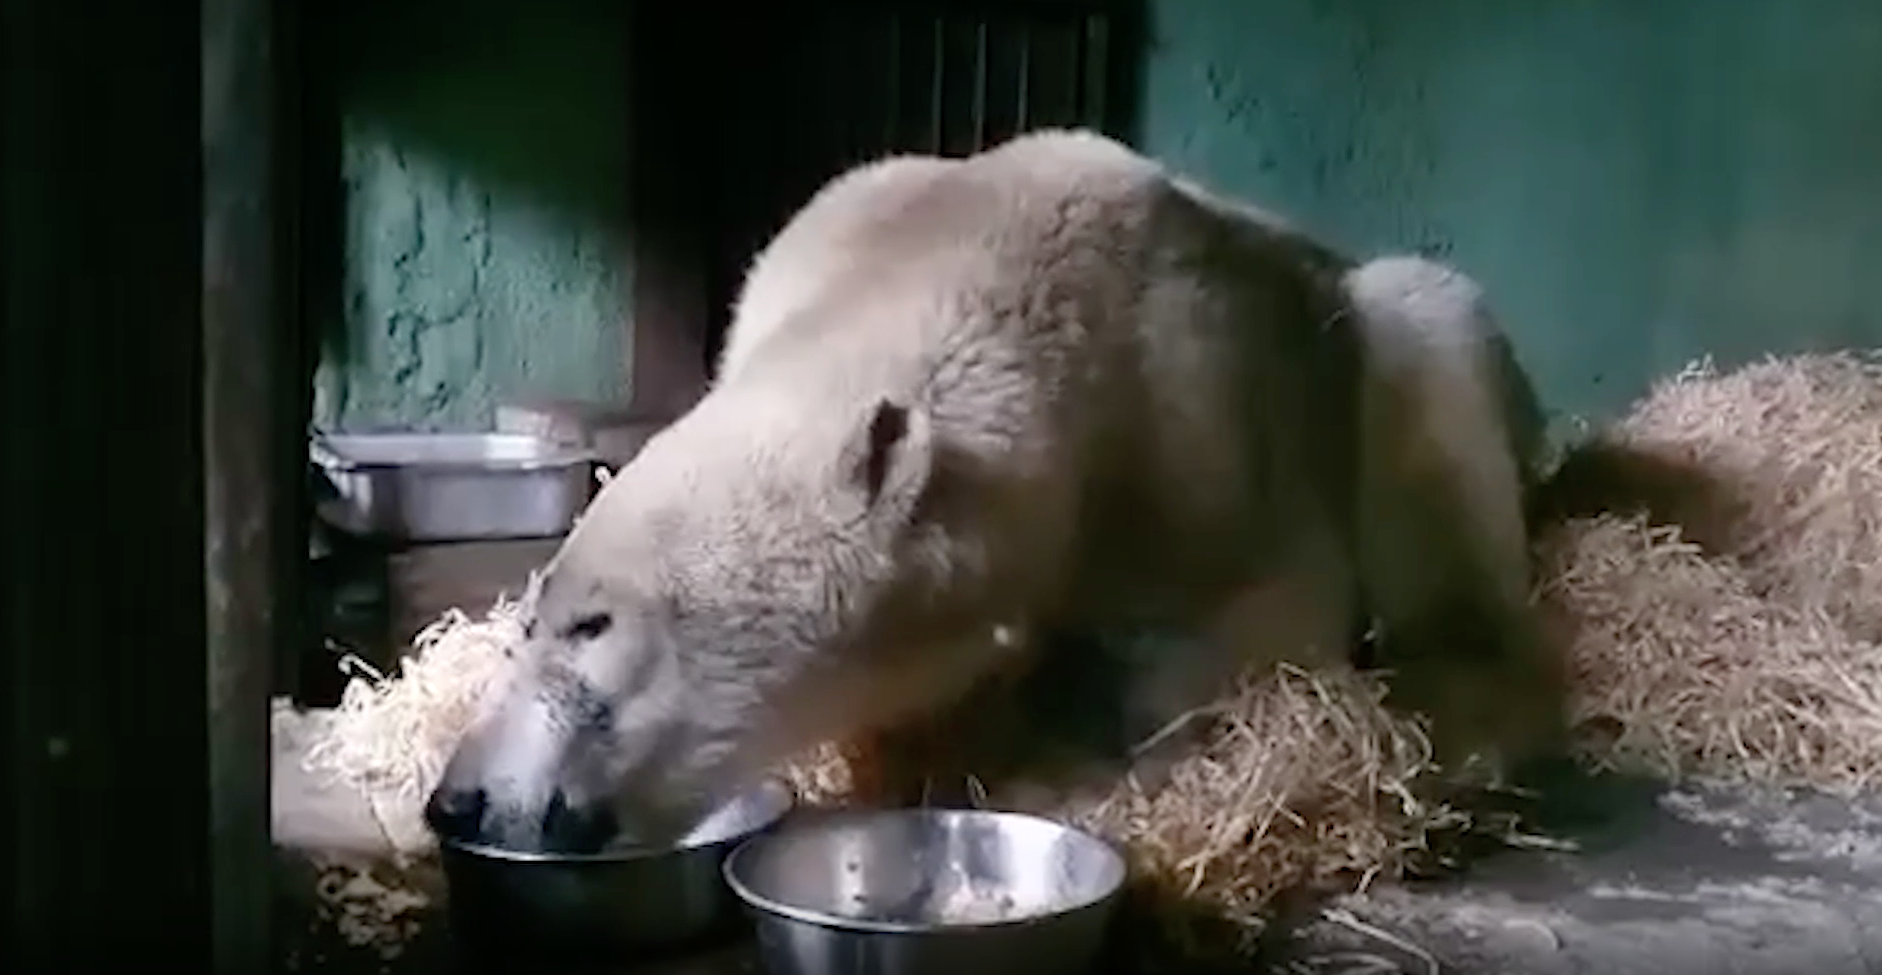 Спасённый на Диксоне раненый медведь развеселил сотрудников зоопарка водным шоу перед КТ